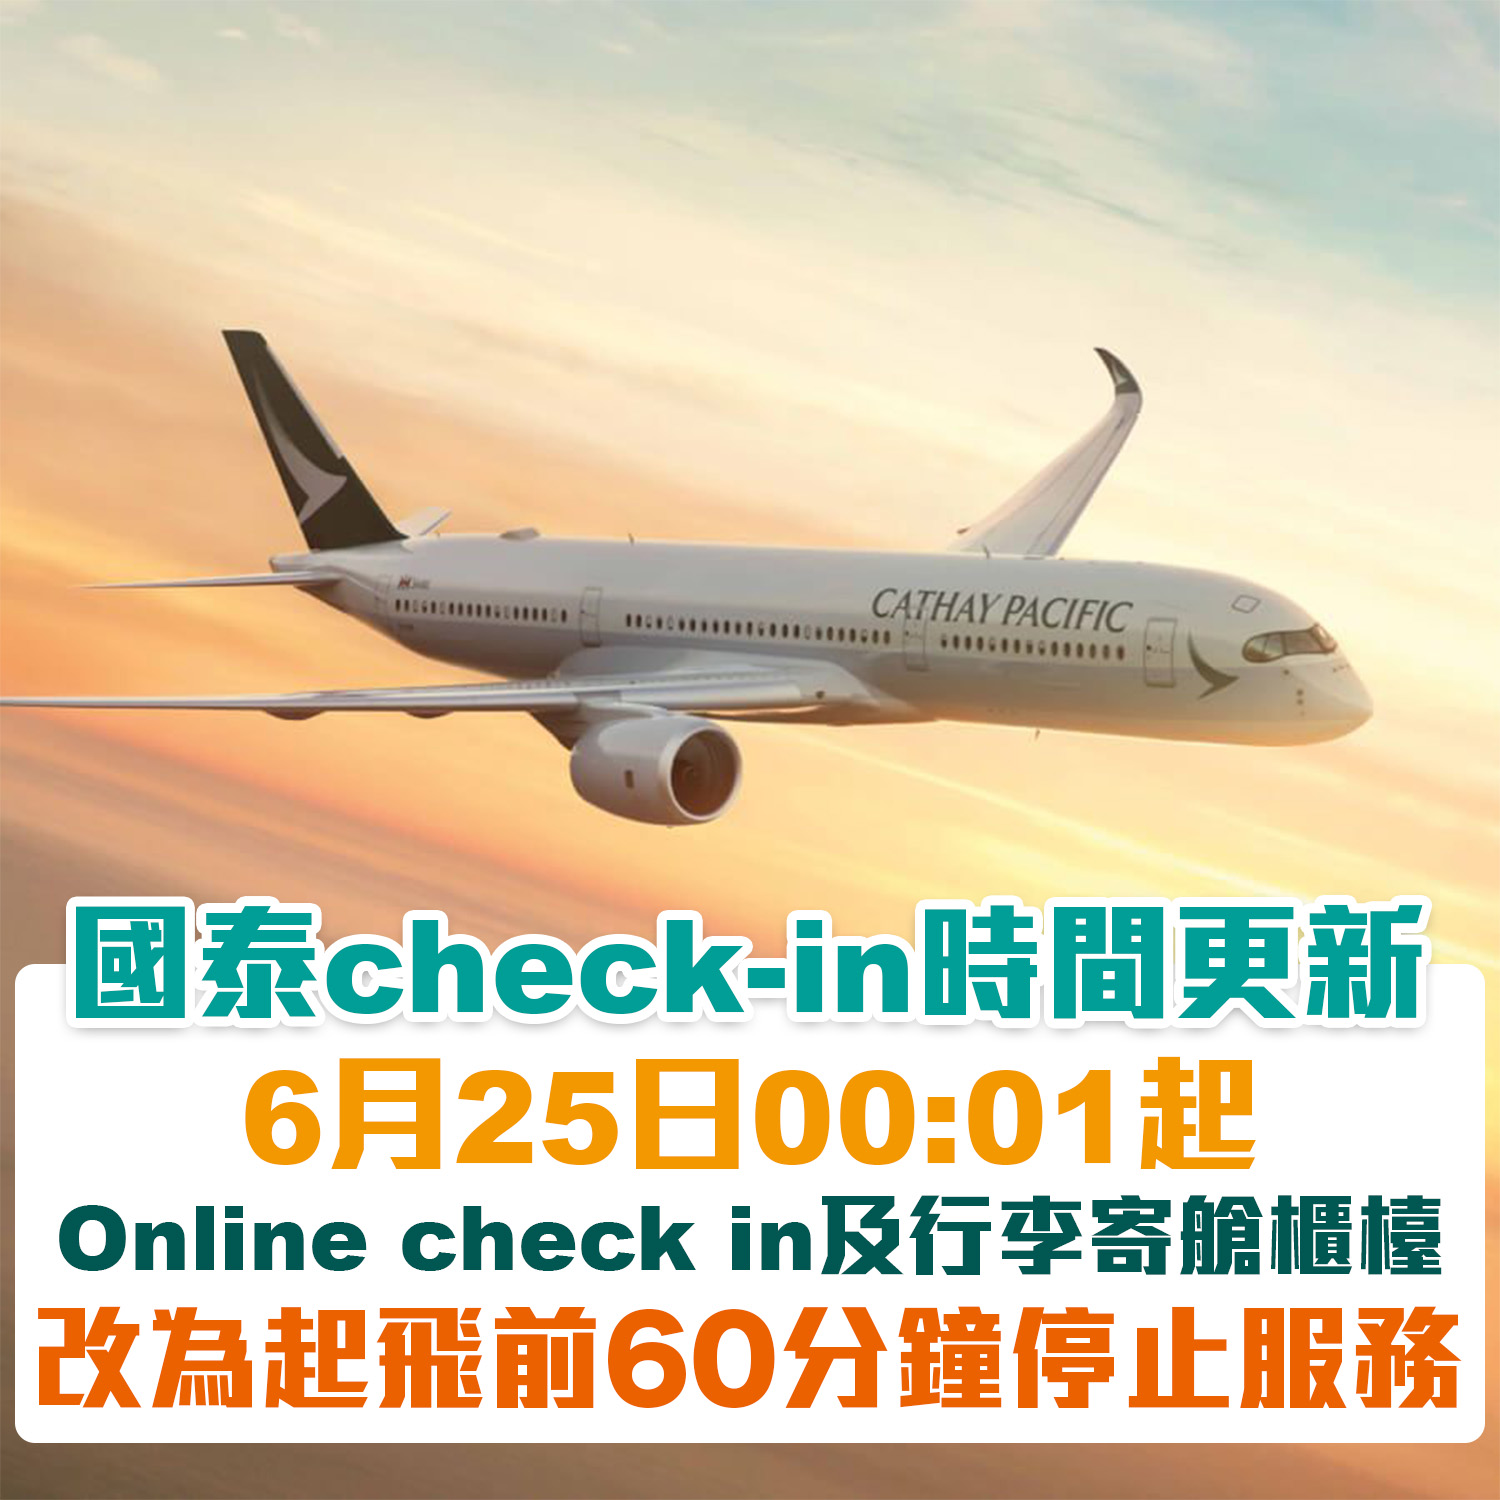 【國泰CX check-in時間更新】6月25日起寄艙/網上check-in時間改為起飛前60分鐘準時停止服務